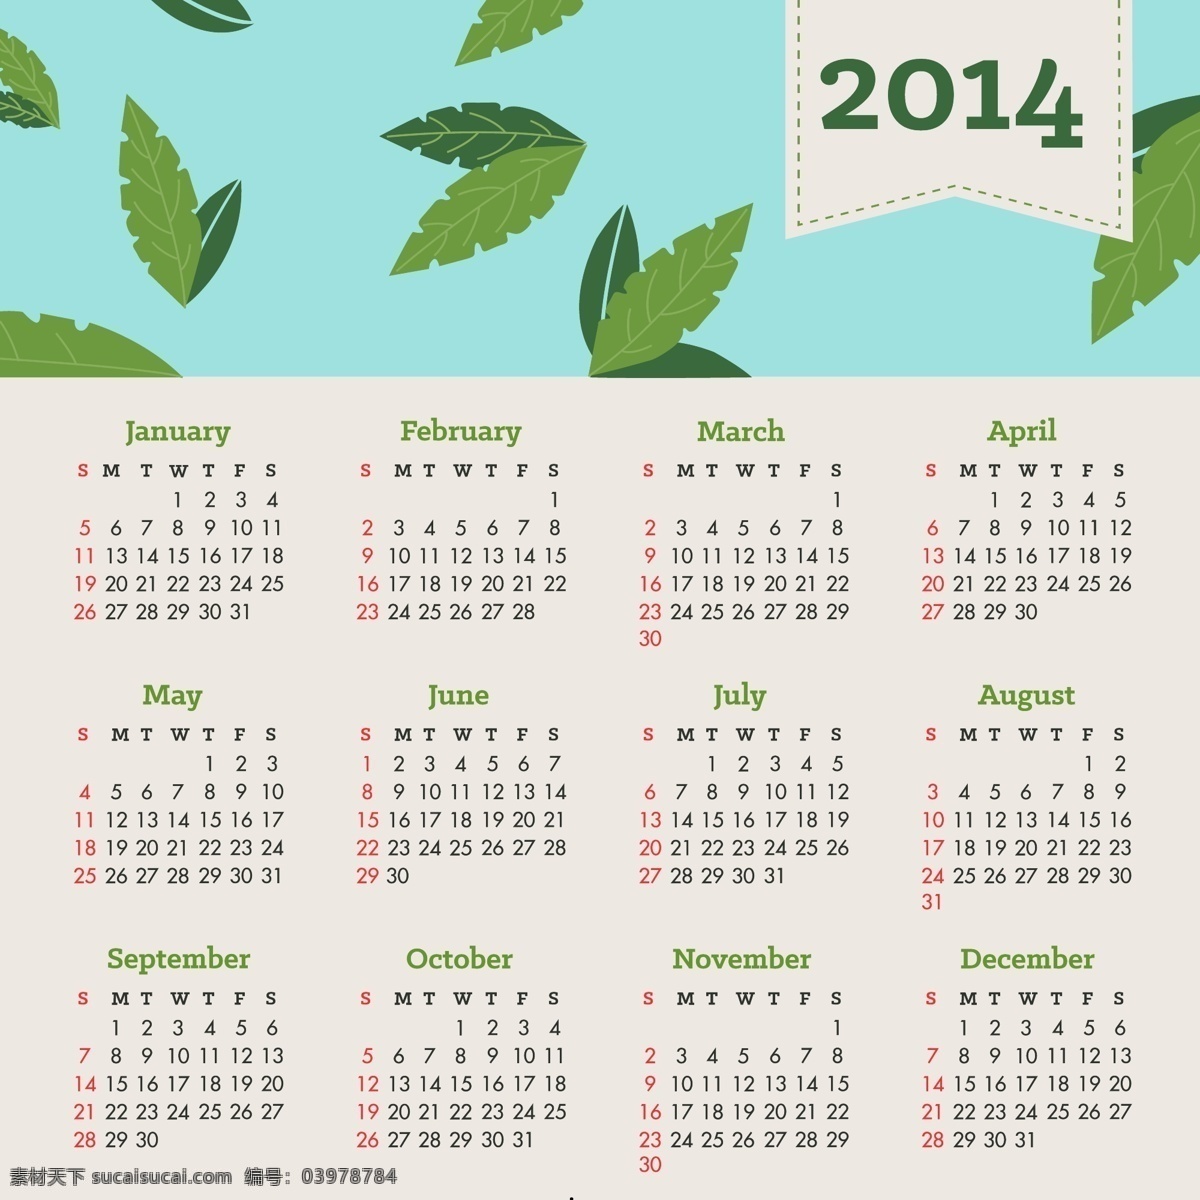 2014 日历 上 落下 叶子 蓝天 下 新年快乐 自然 绿色 天空 新的一年 树叶 蓝色 快乐 生态 新 议程 风力 计划 年 未来 新鲜 白色